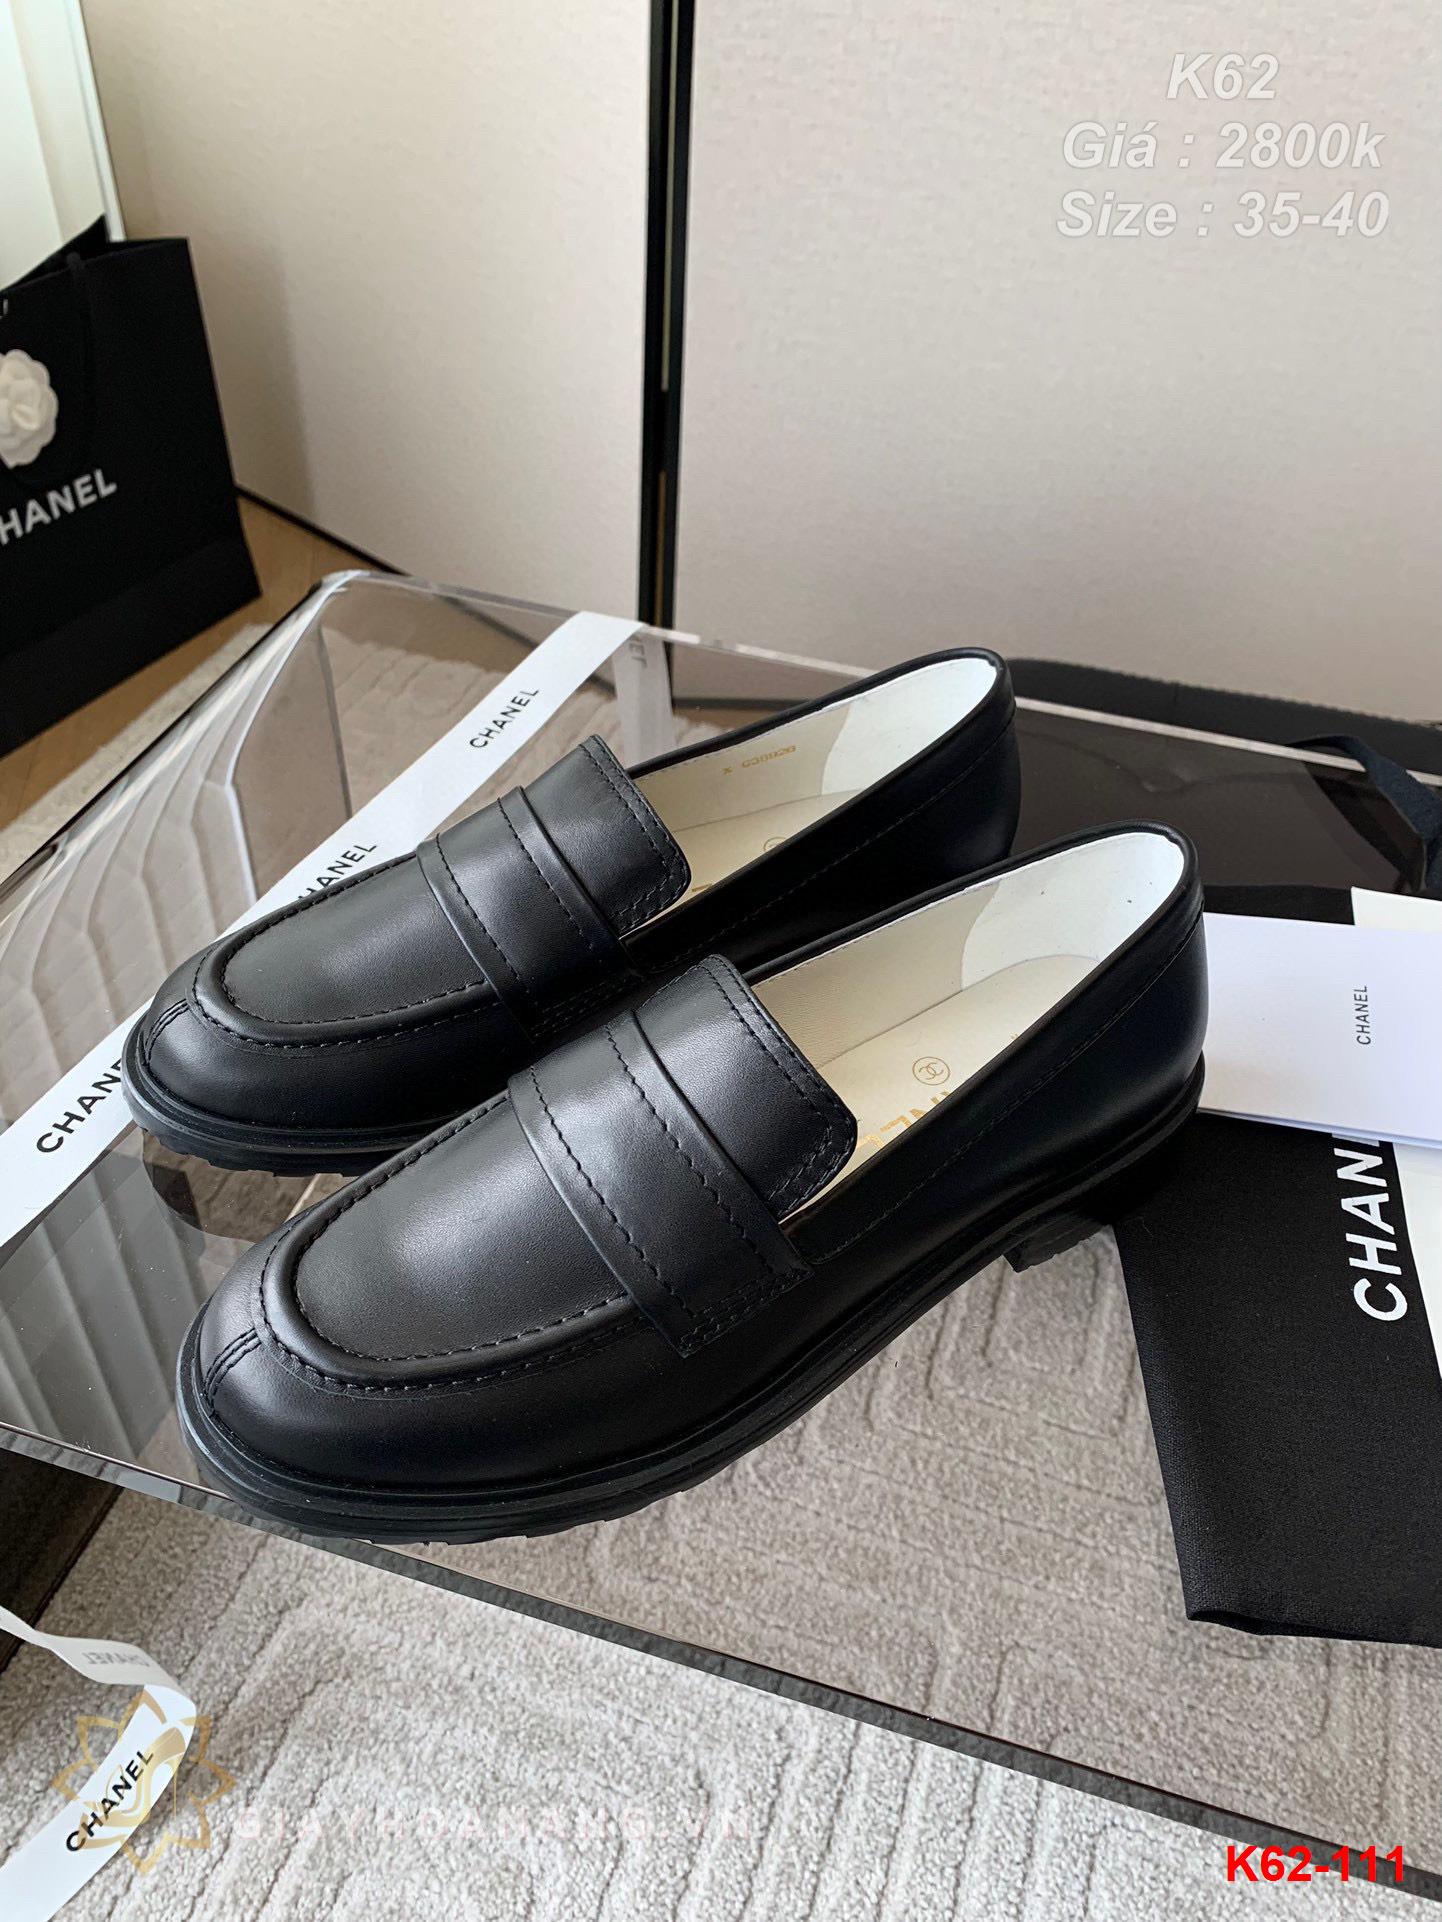 K62-111 Chanel giày lười siêu cấp